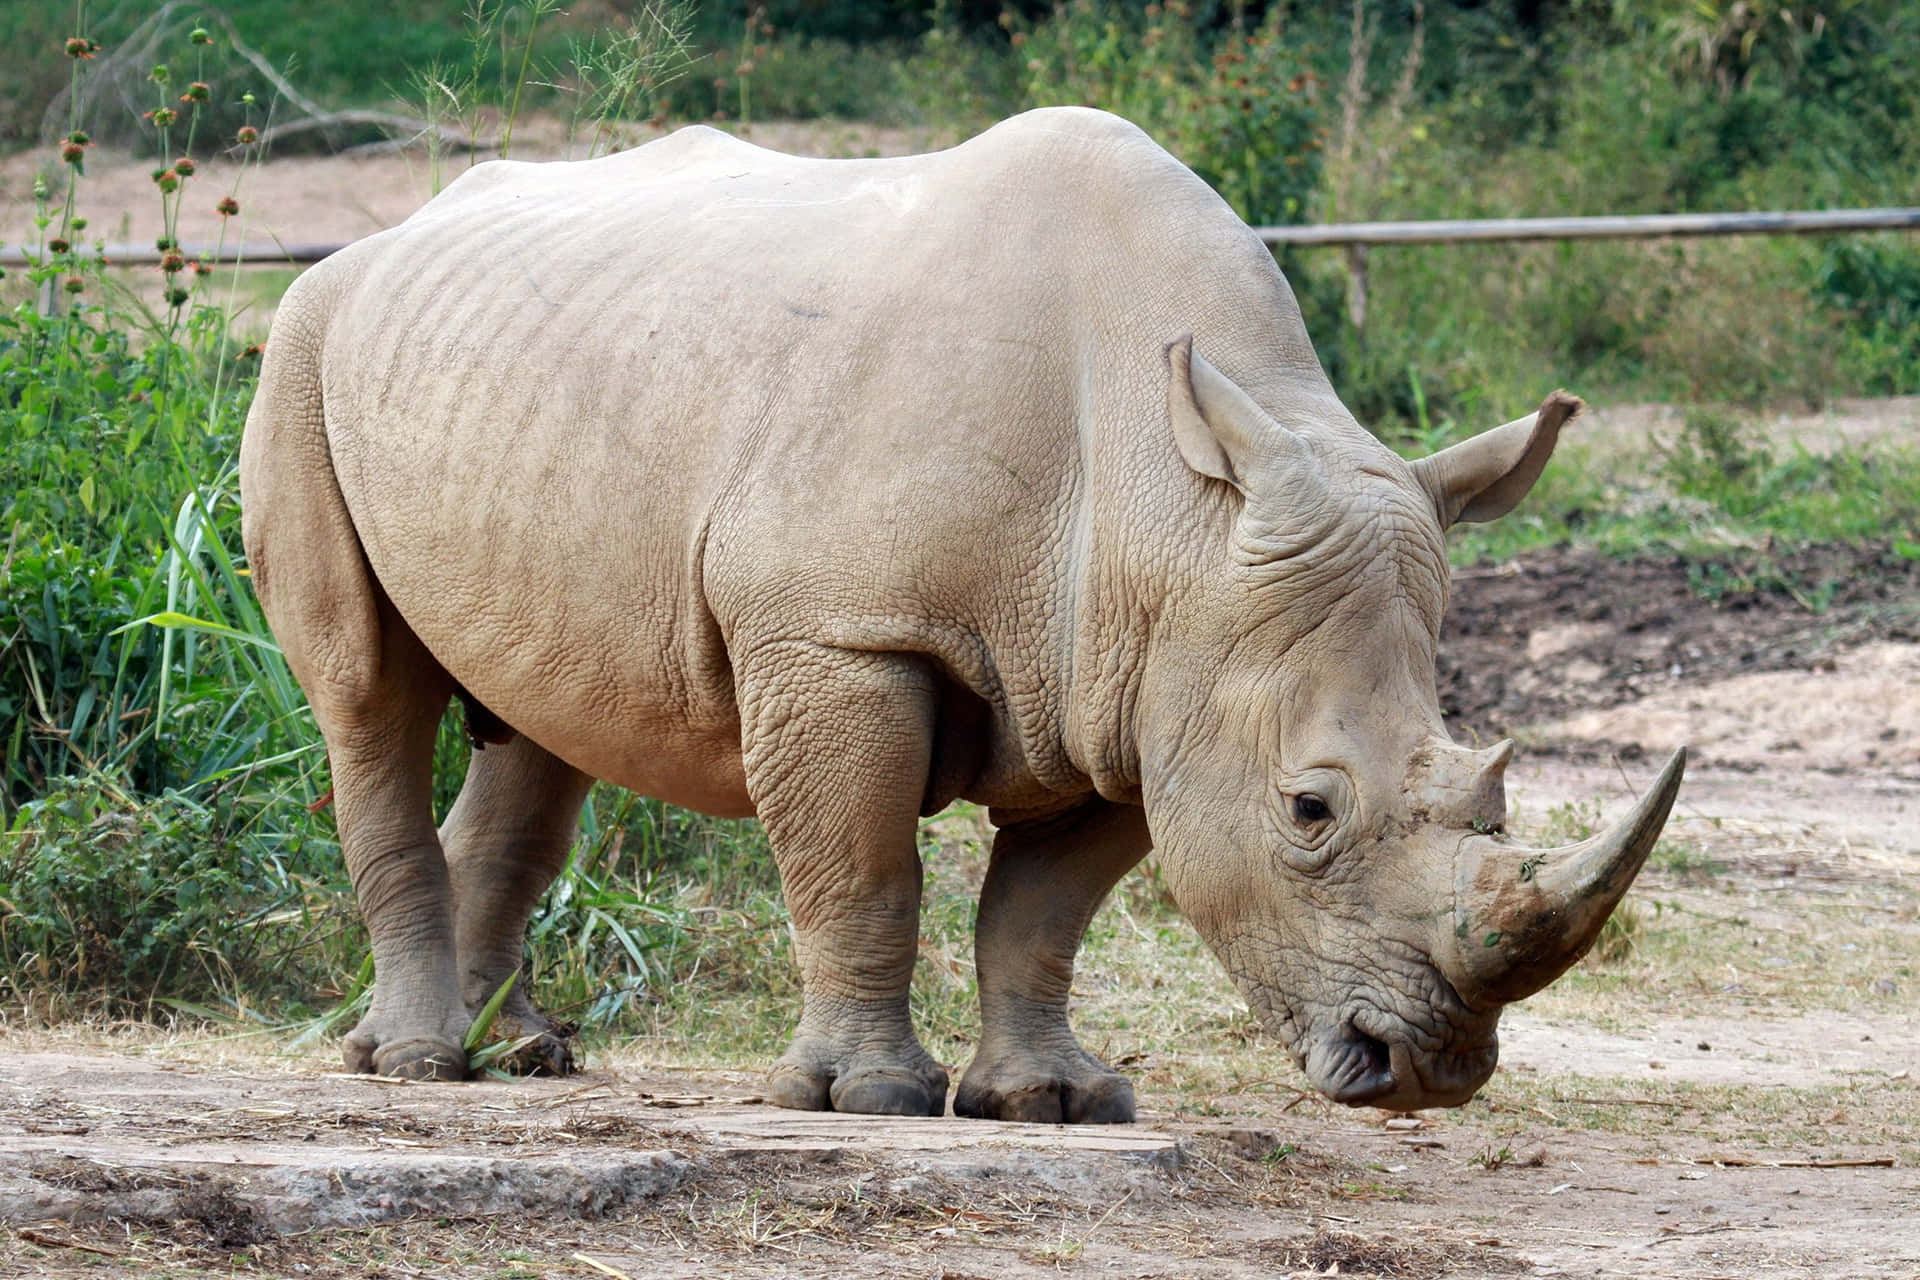 A Rhino In A Zoo